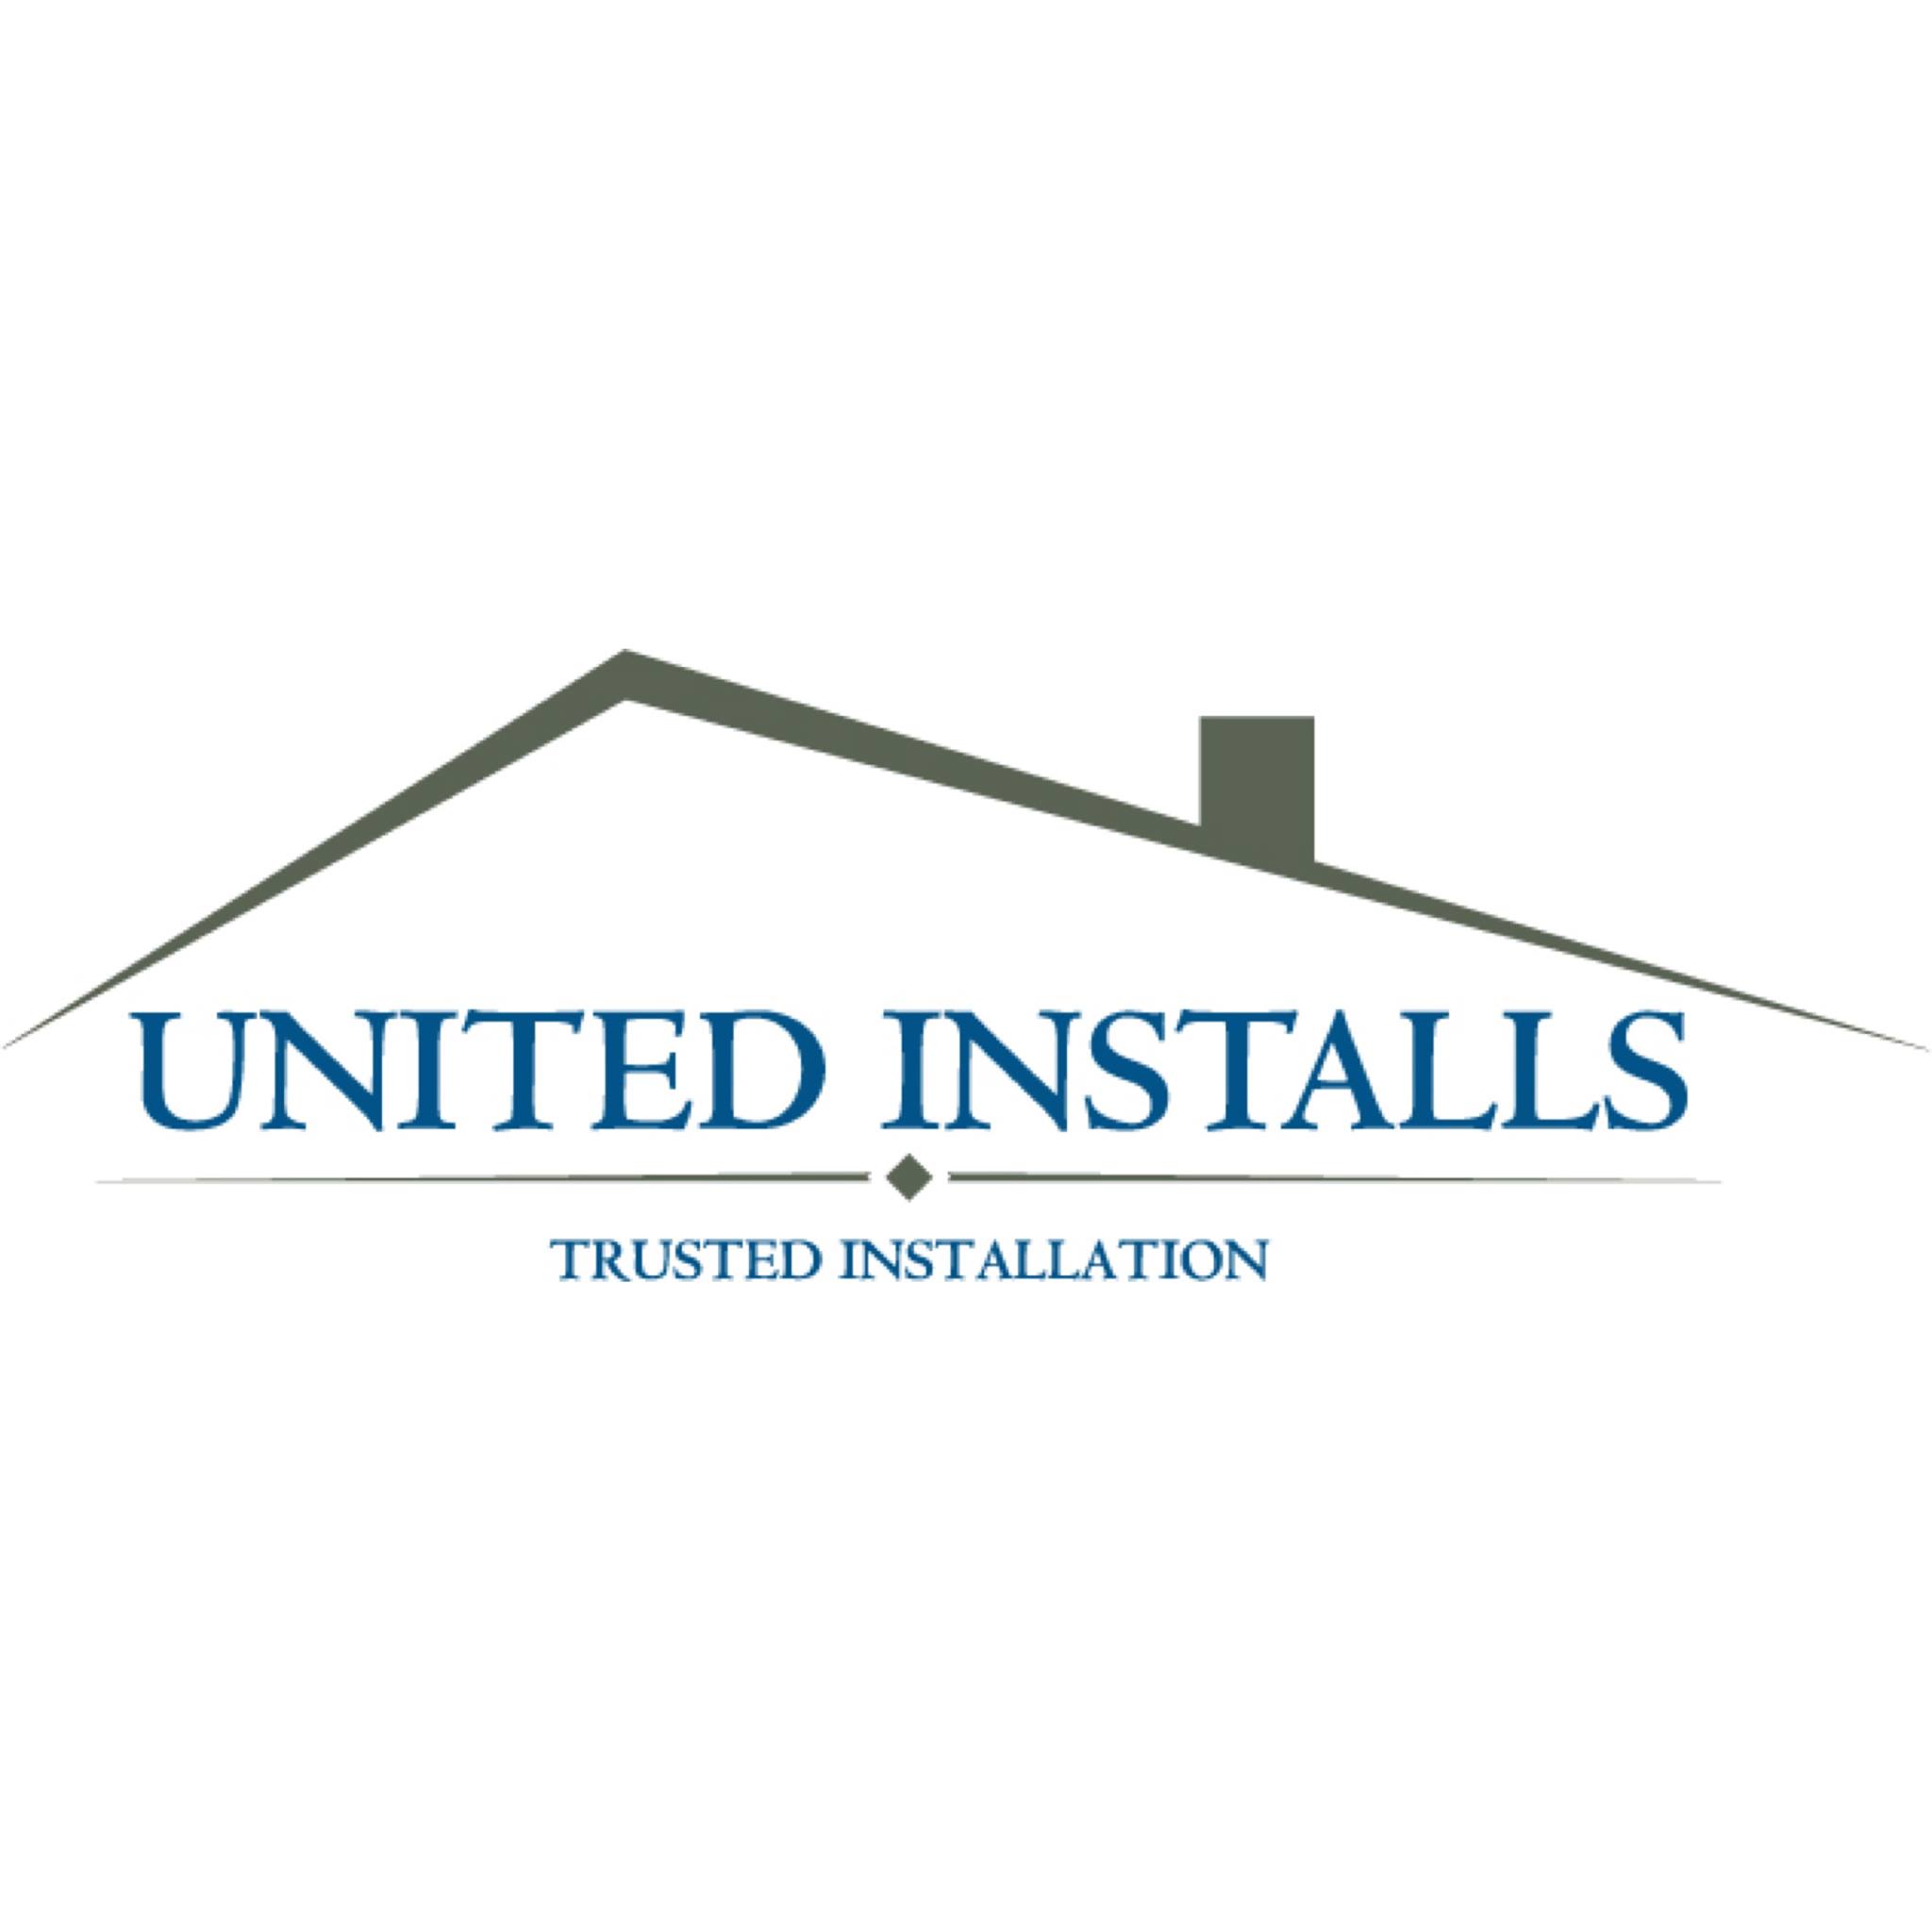 United Installs | Trusted Installation